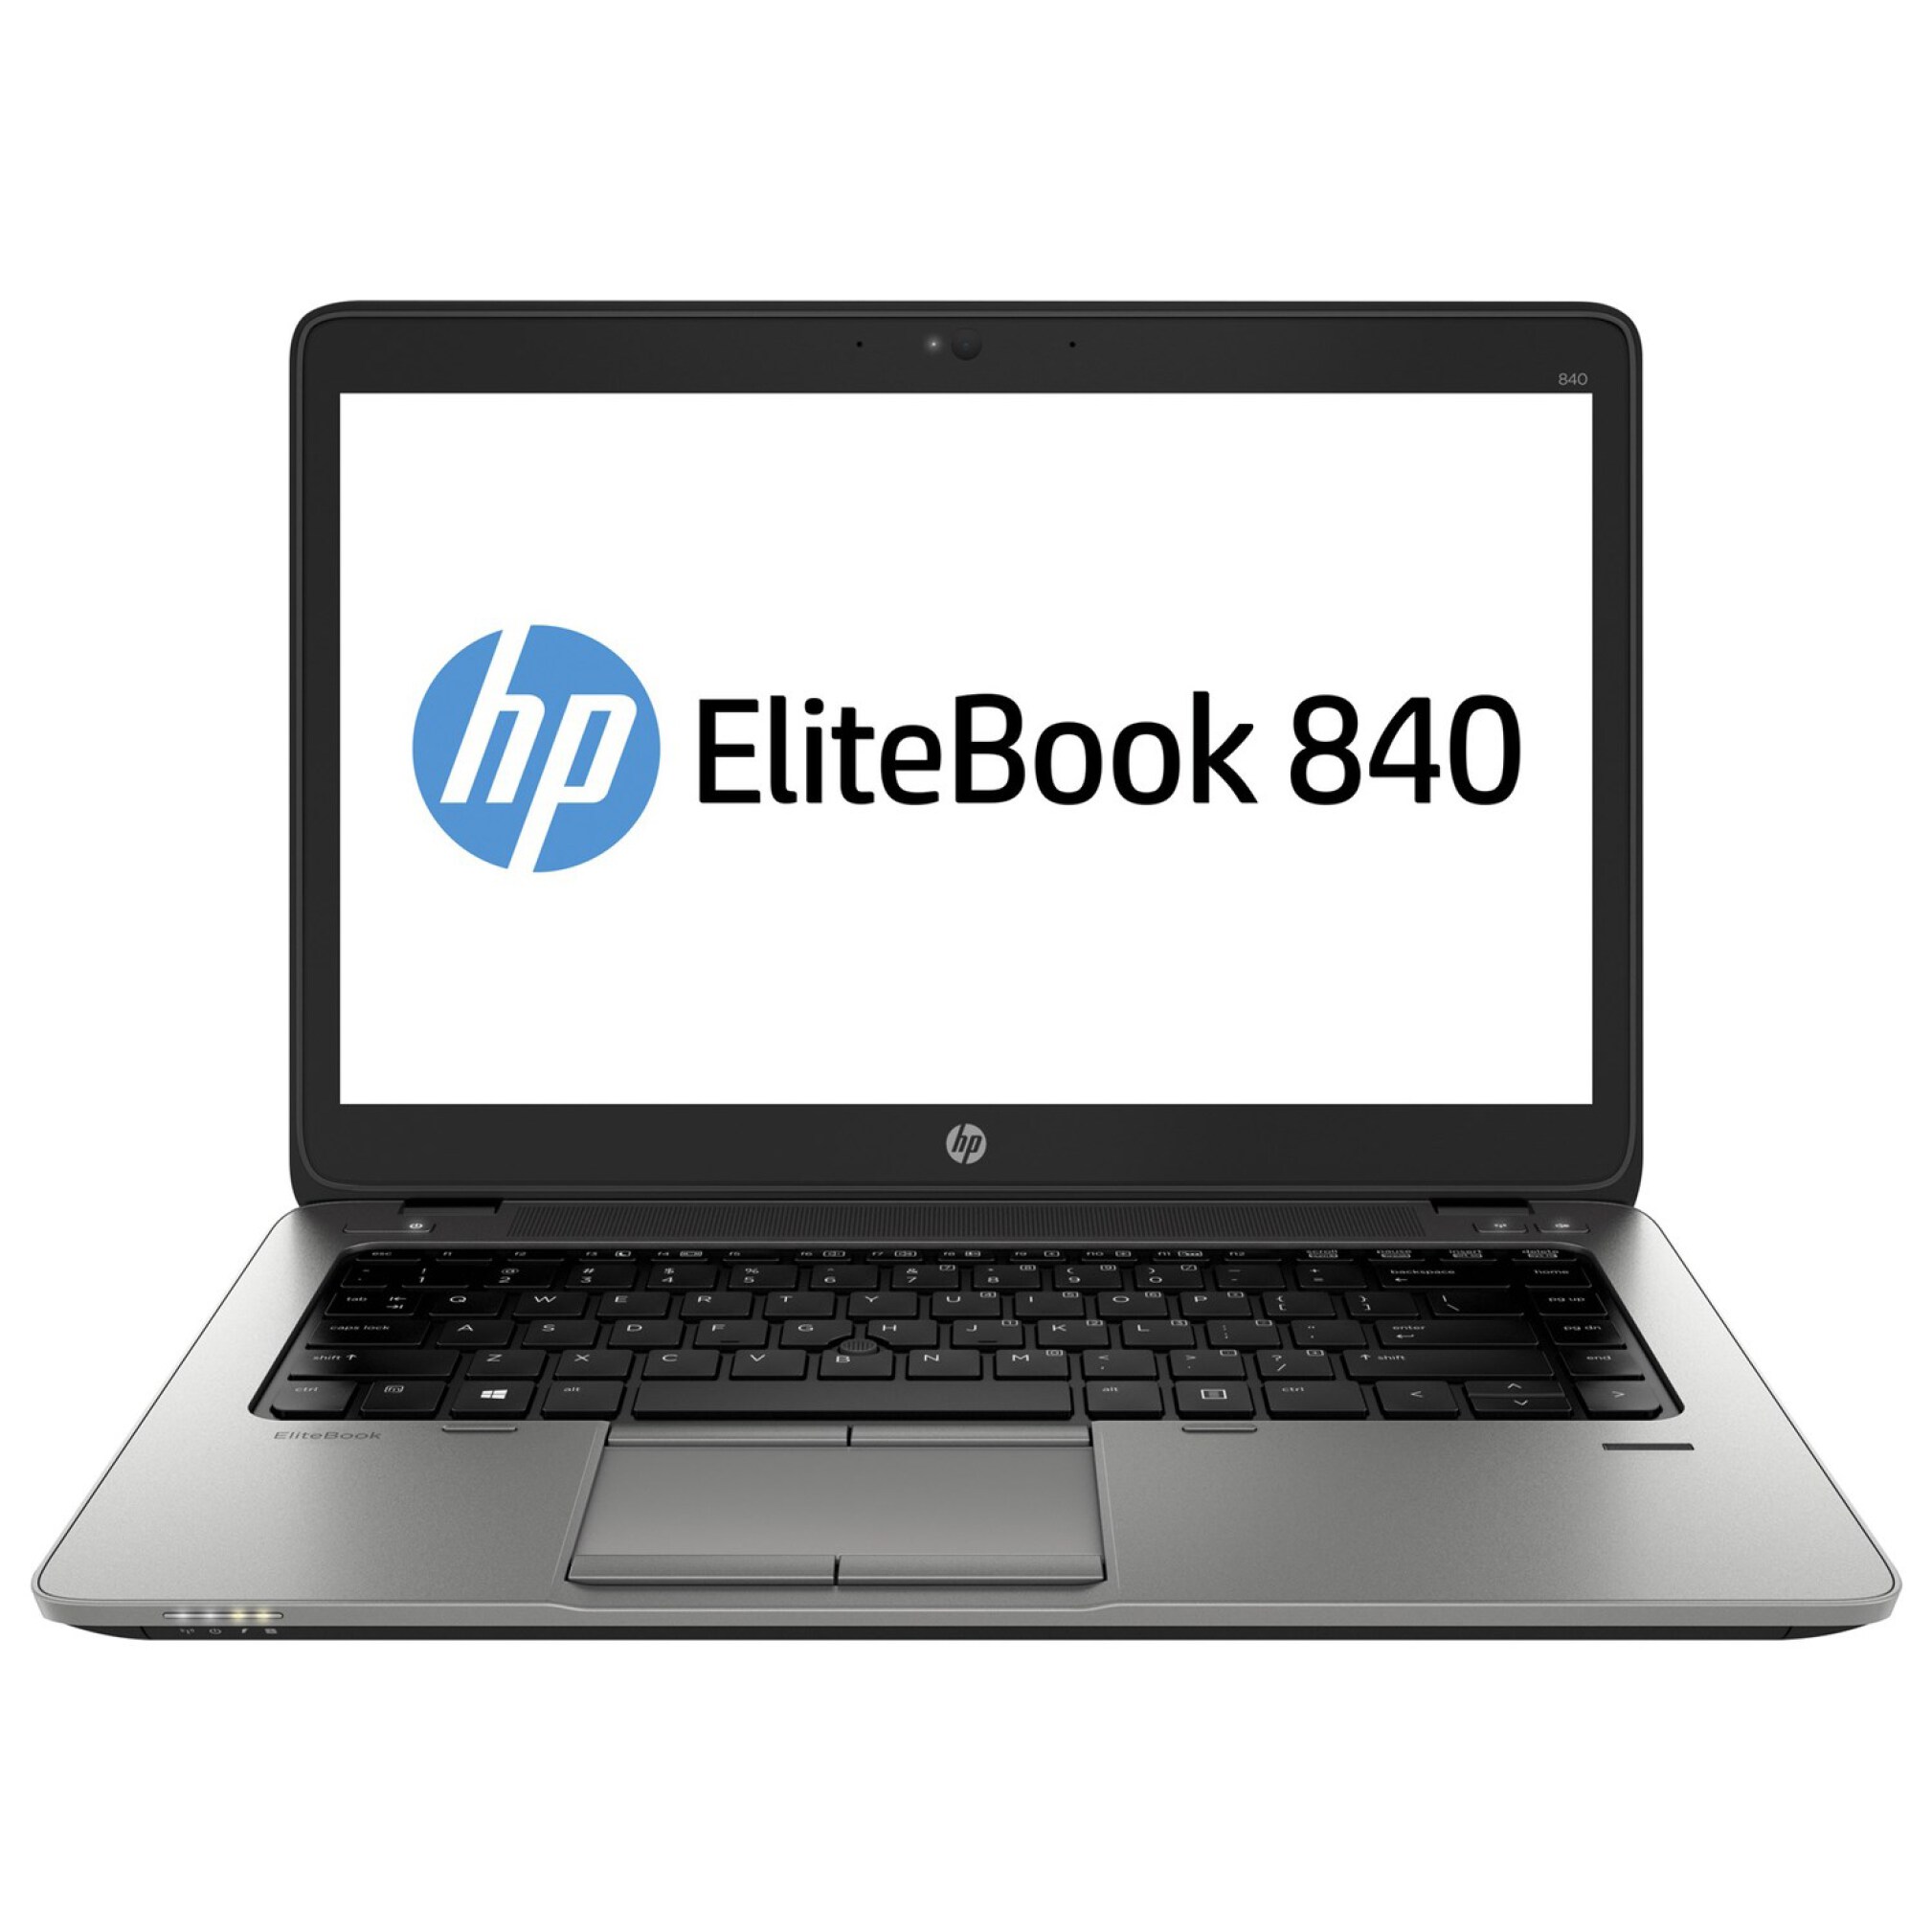  خرید مشخصات و قیمت لپ تاپ Hp Elitebook 840 G1 با رم 8 گیگابایت و حافظه 256 گیگابایت و گرافیک 1 یک گیگابایت AMD 